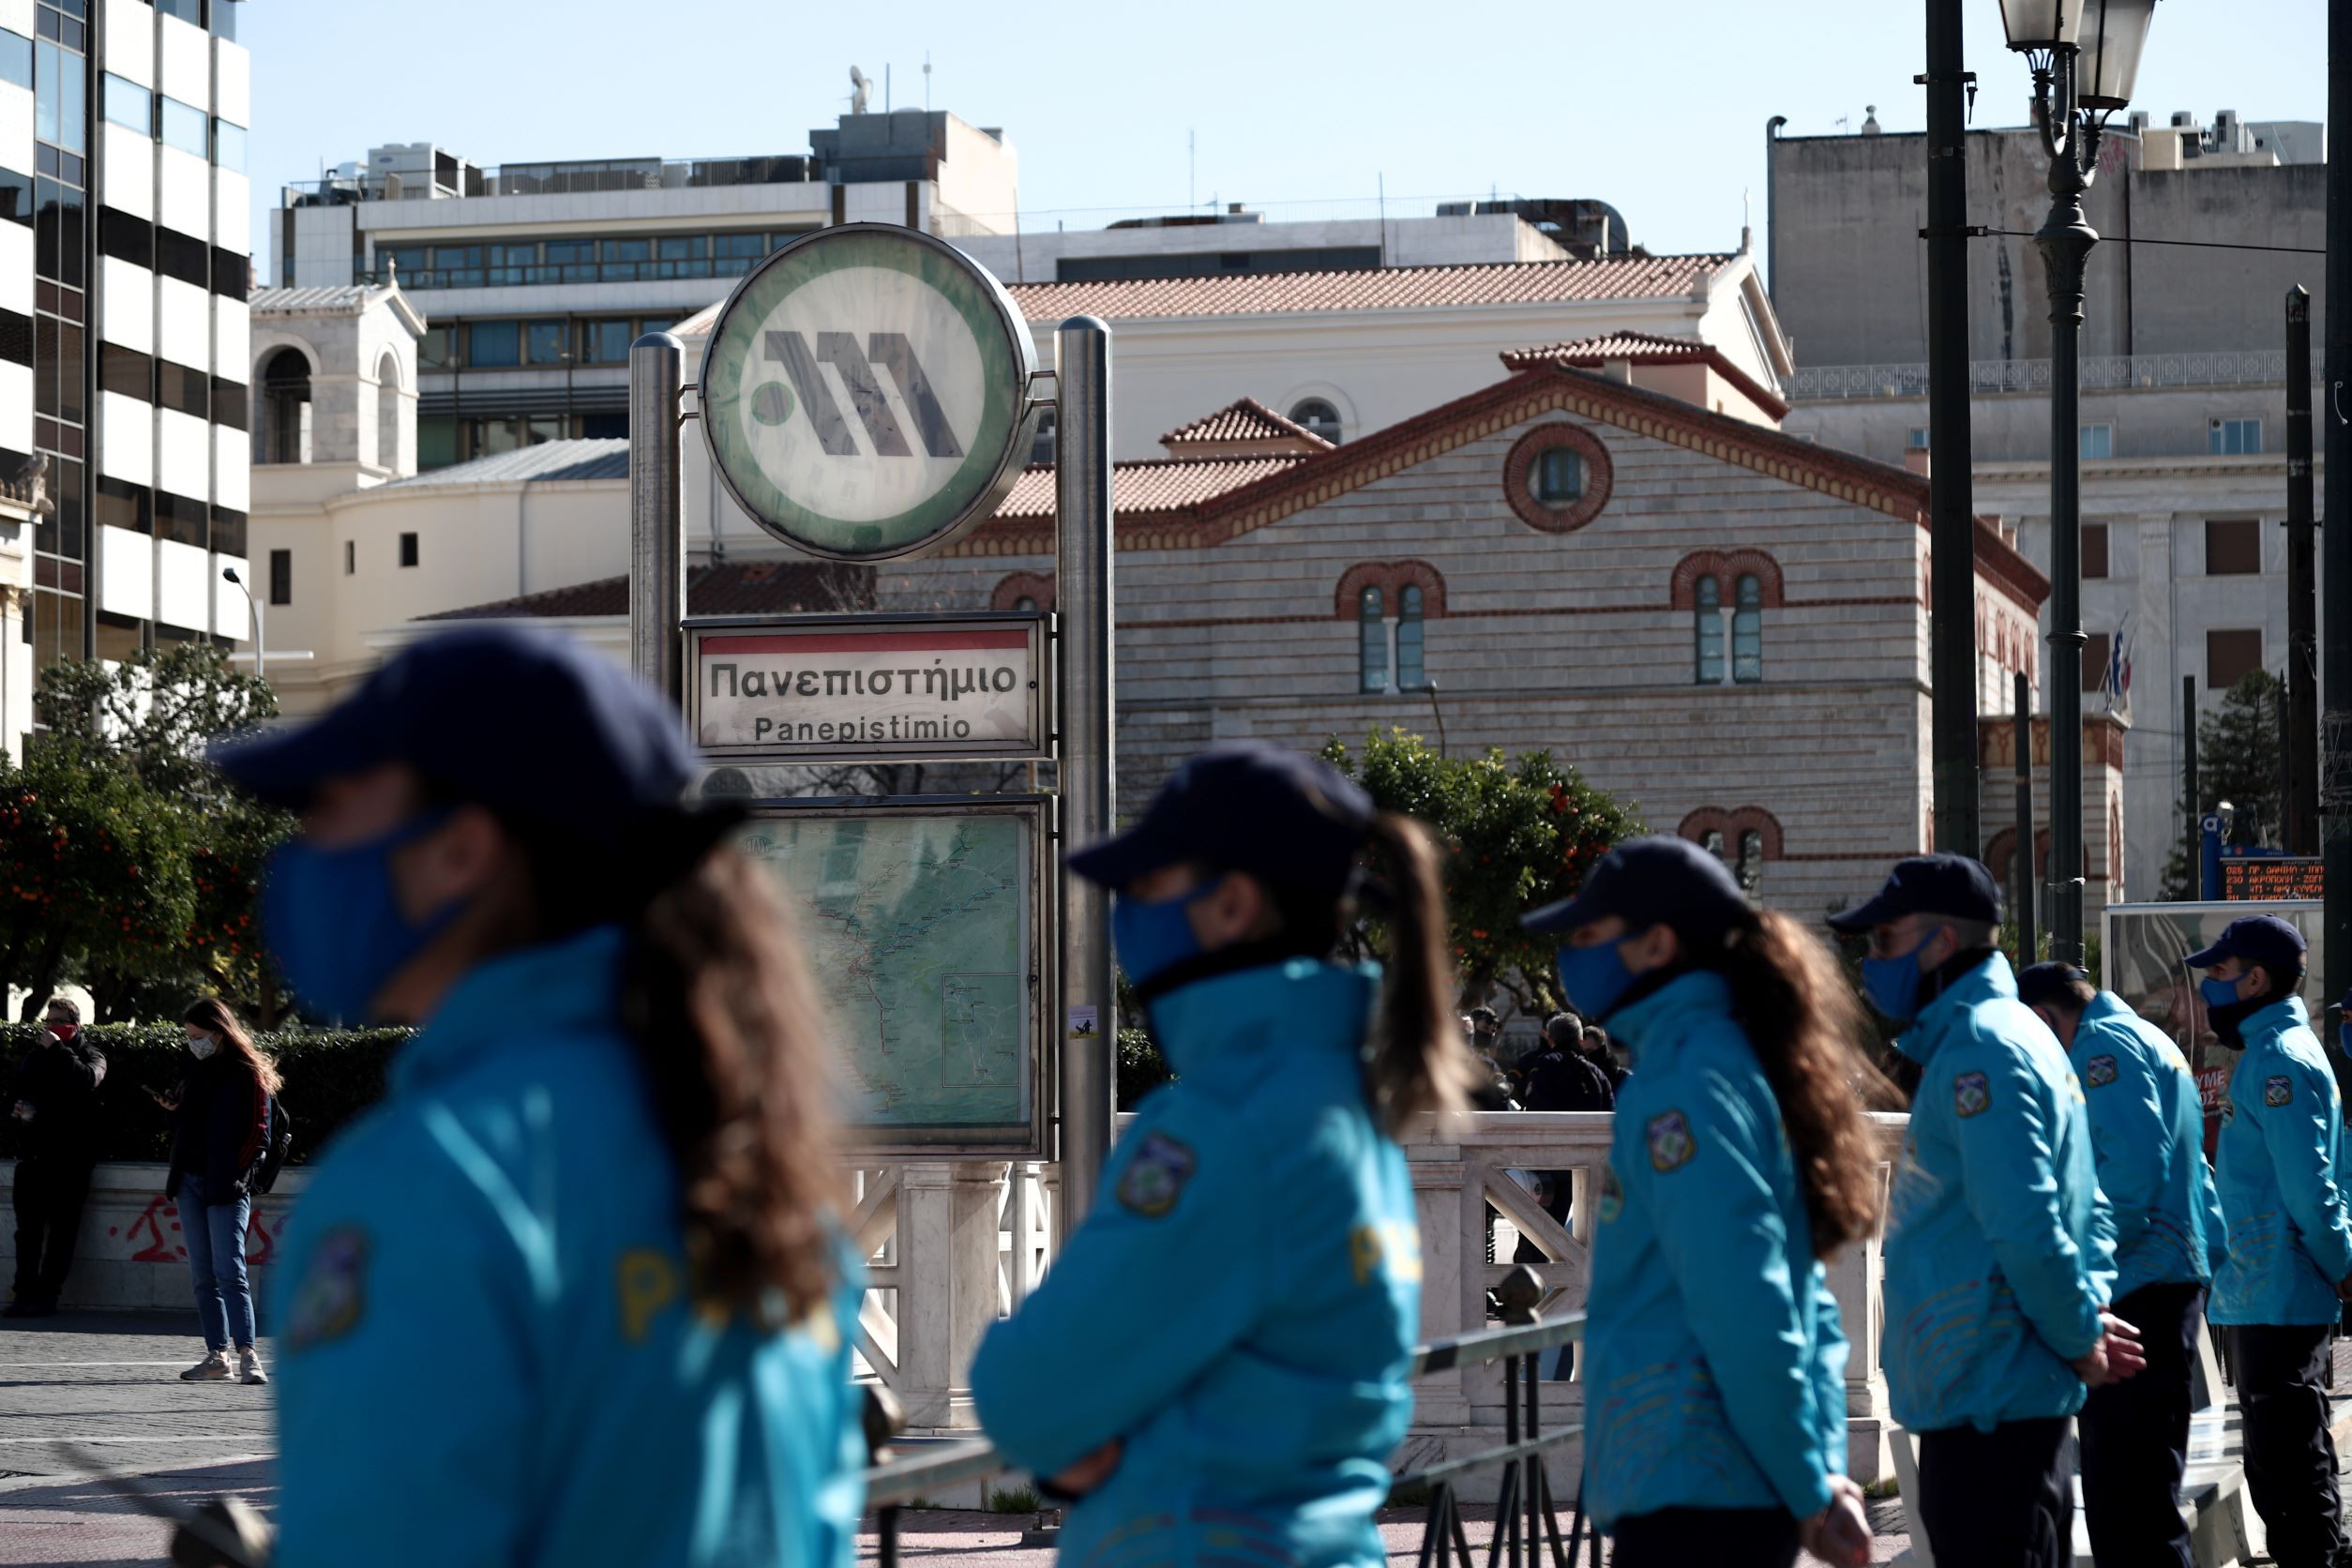 Επέτειος δολοφονίας Α. Γρηγορόπουλου: Κλειστός ο σταθμός του μετρό «Πανεπιστήμιο» την Τρίτη